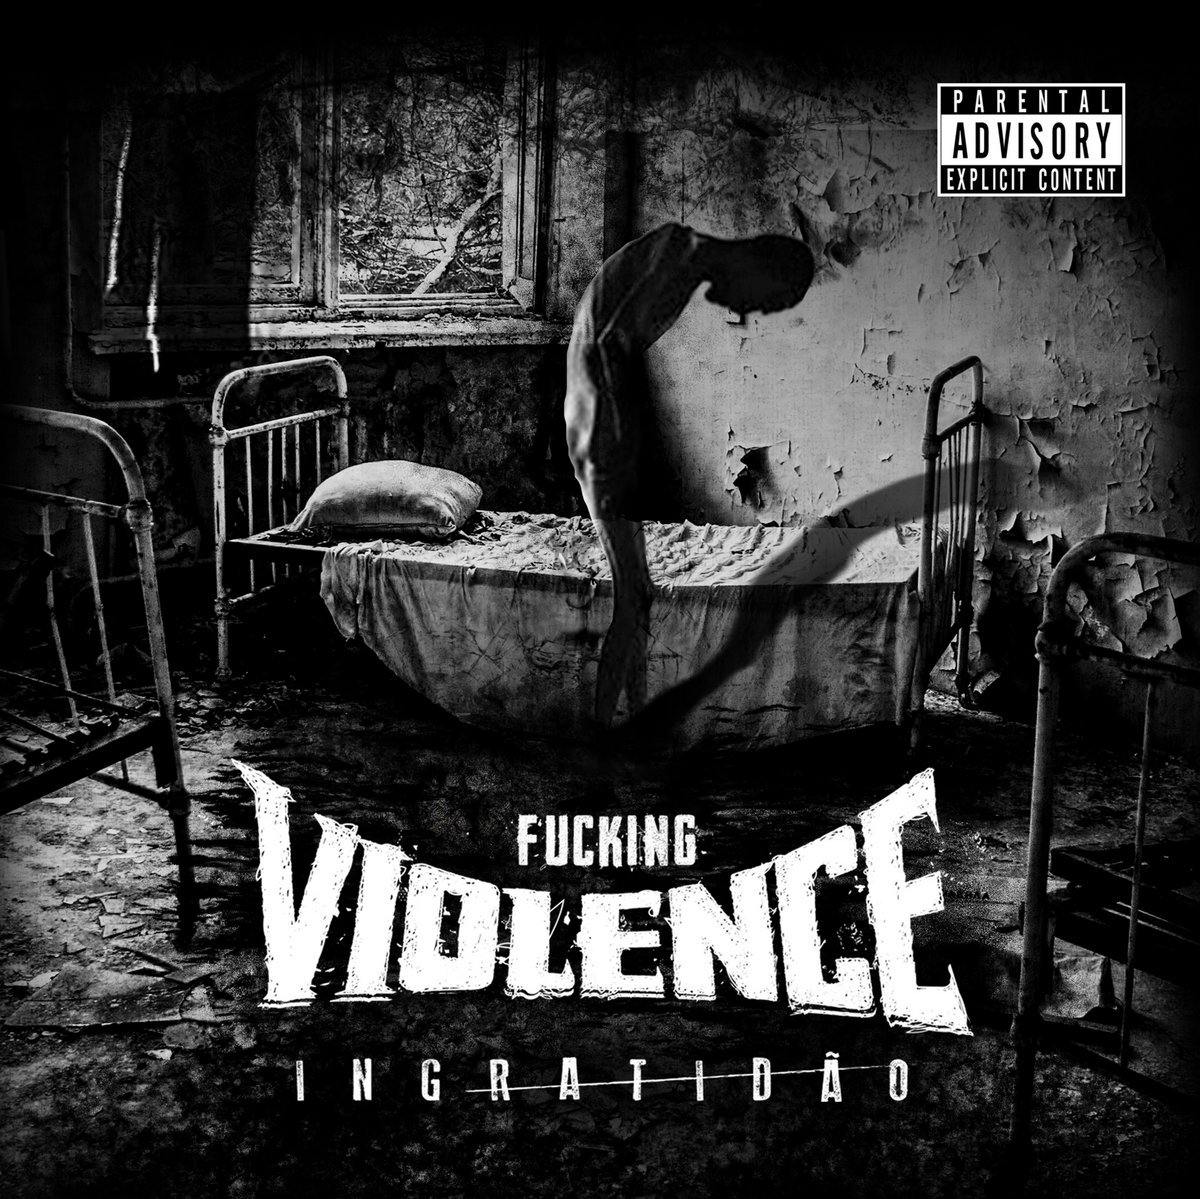 Buy – Fucking Violence "Ingratidão" CD – Band & Music Merch – Cold Cuts Merch